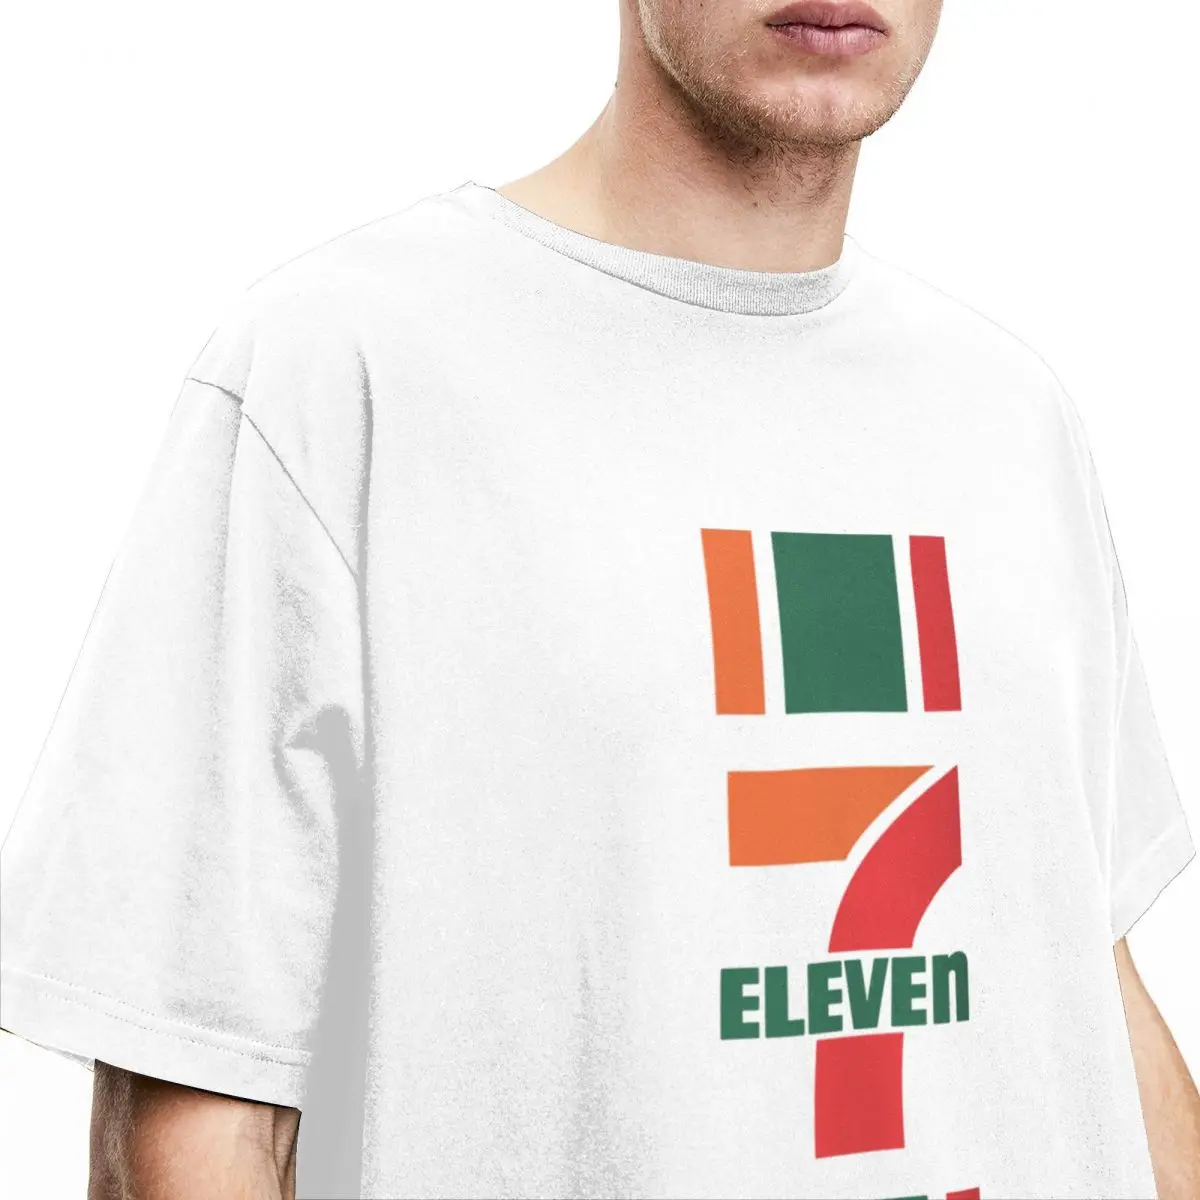 Burrat, Gratë e T Shirt Shtatë Njëmbëdhjetë Merch Qesharake 100% Këmisha Pambuku Supermarket Logon e T-Shirt të Ekuipazhit Qafë e Krye Dhuratat e Krishtlindjeve . ' - ' . 1